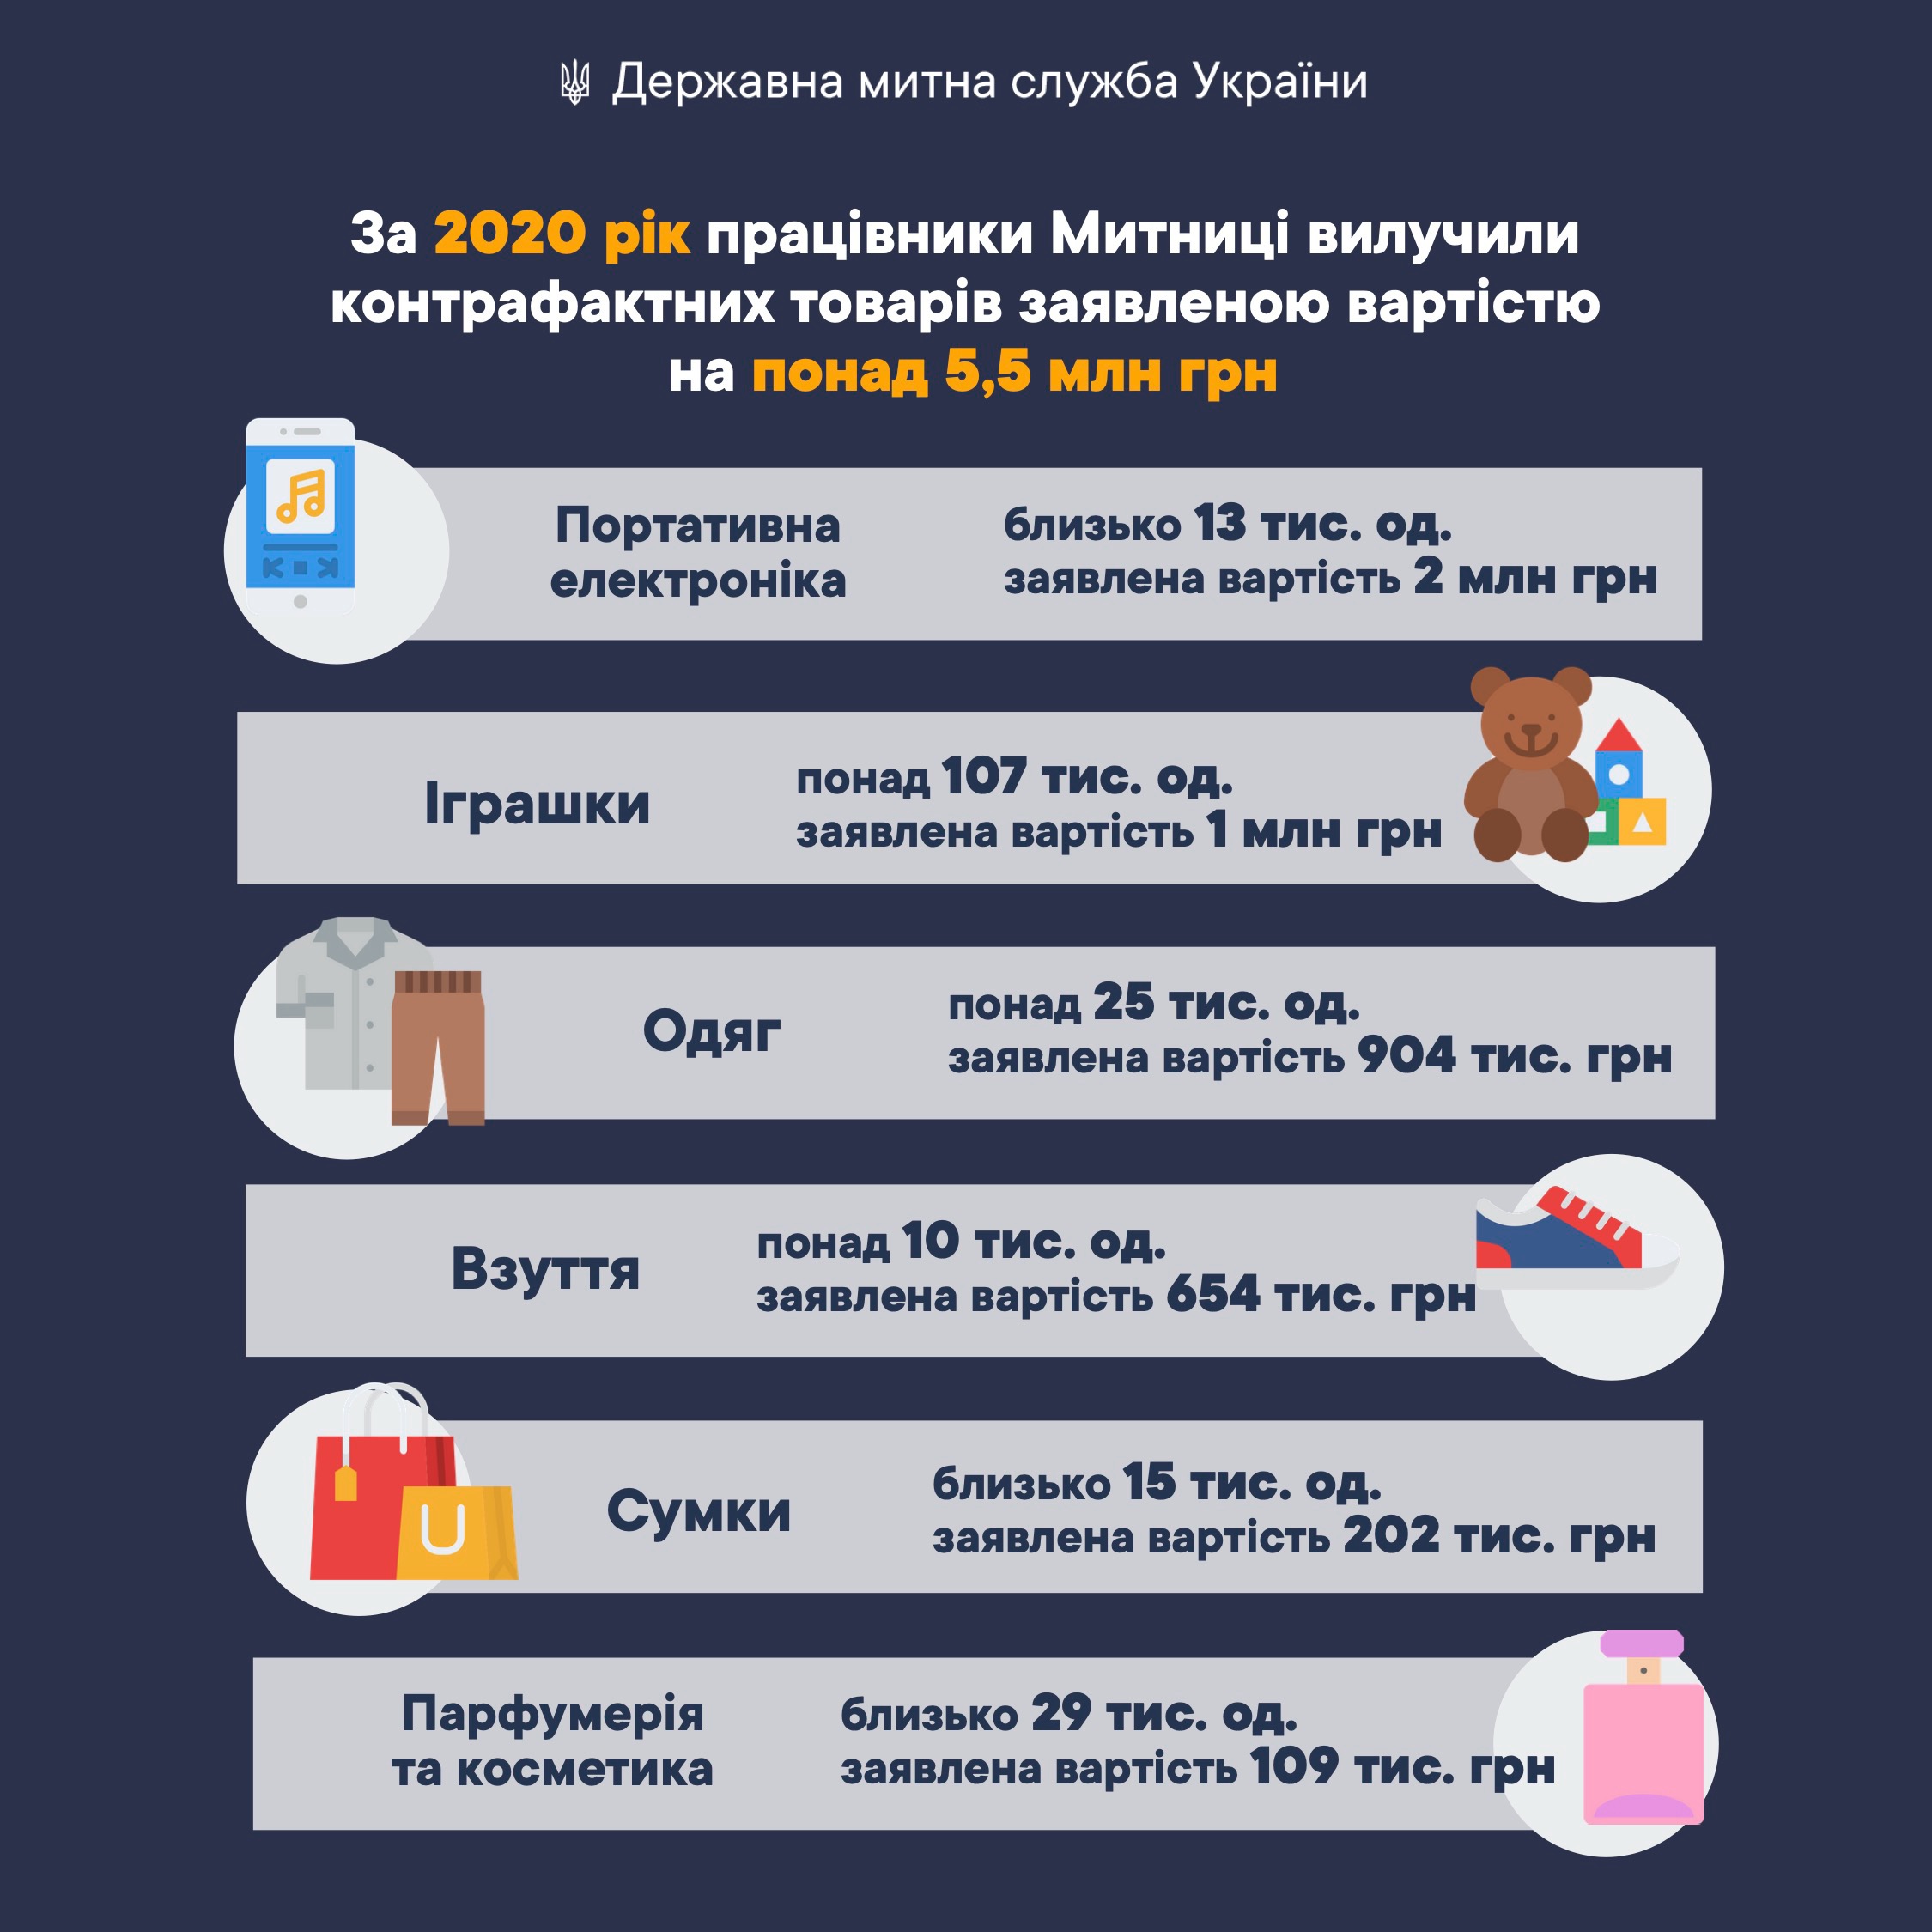 Стало известно, какие товары чаще всего конфисковали на украинской таможне в 2020 году - фото 2